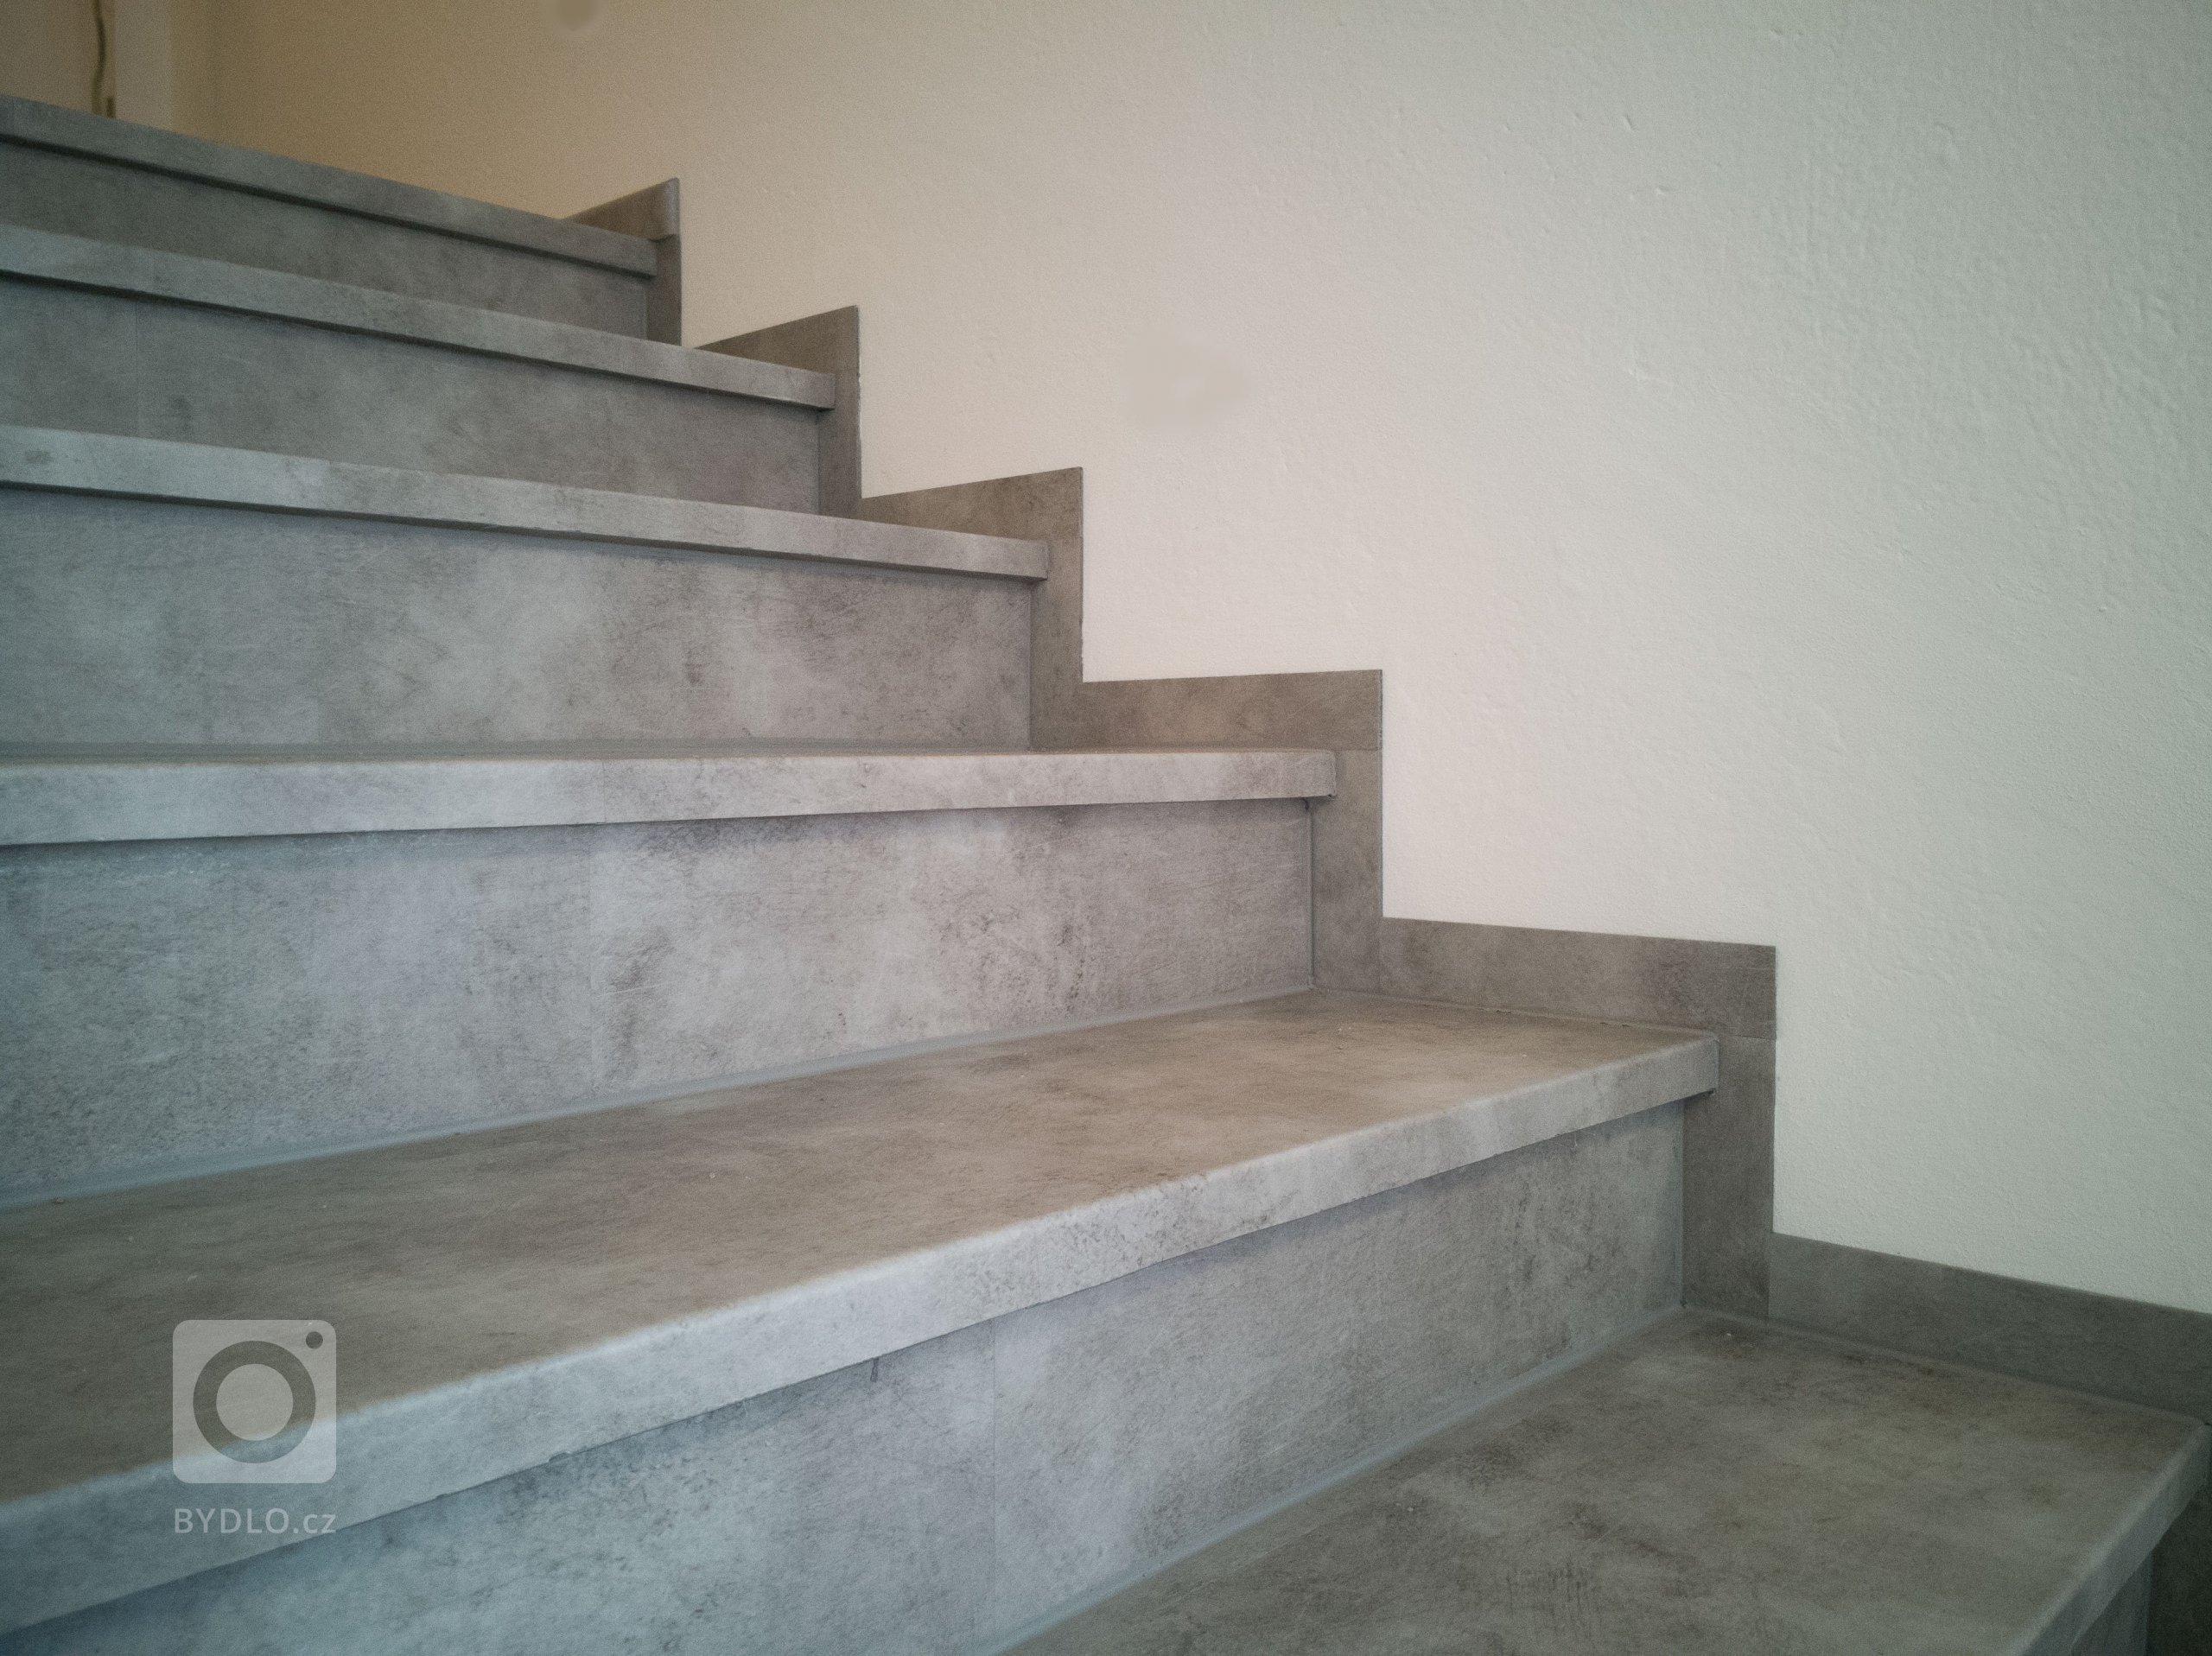 Finální stav schodiště po renovaci - detail